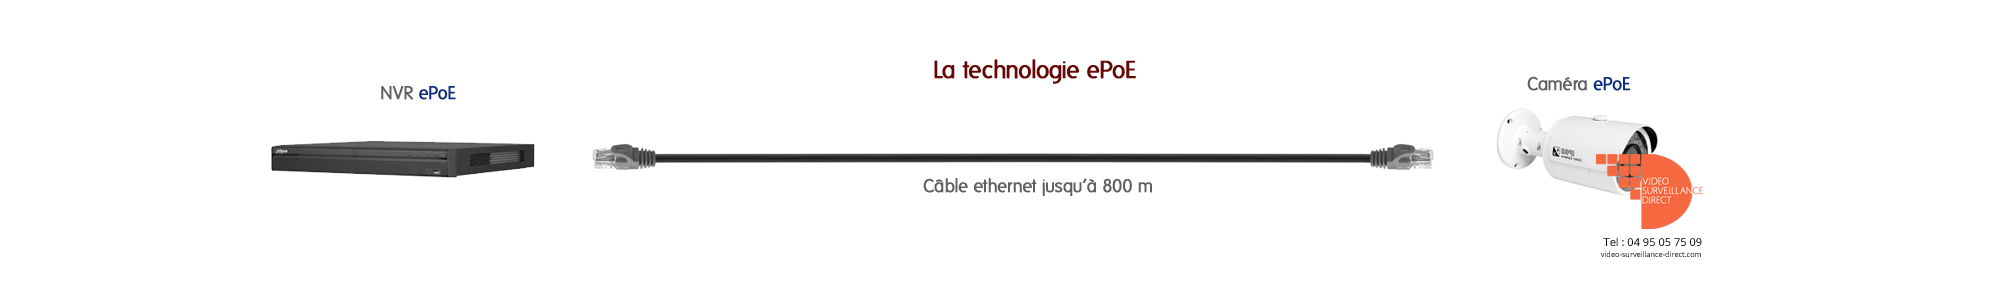 Caméra ePoE, caméra IP pour les longues distances de câble